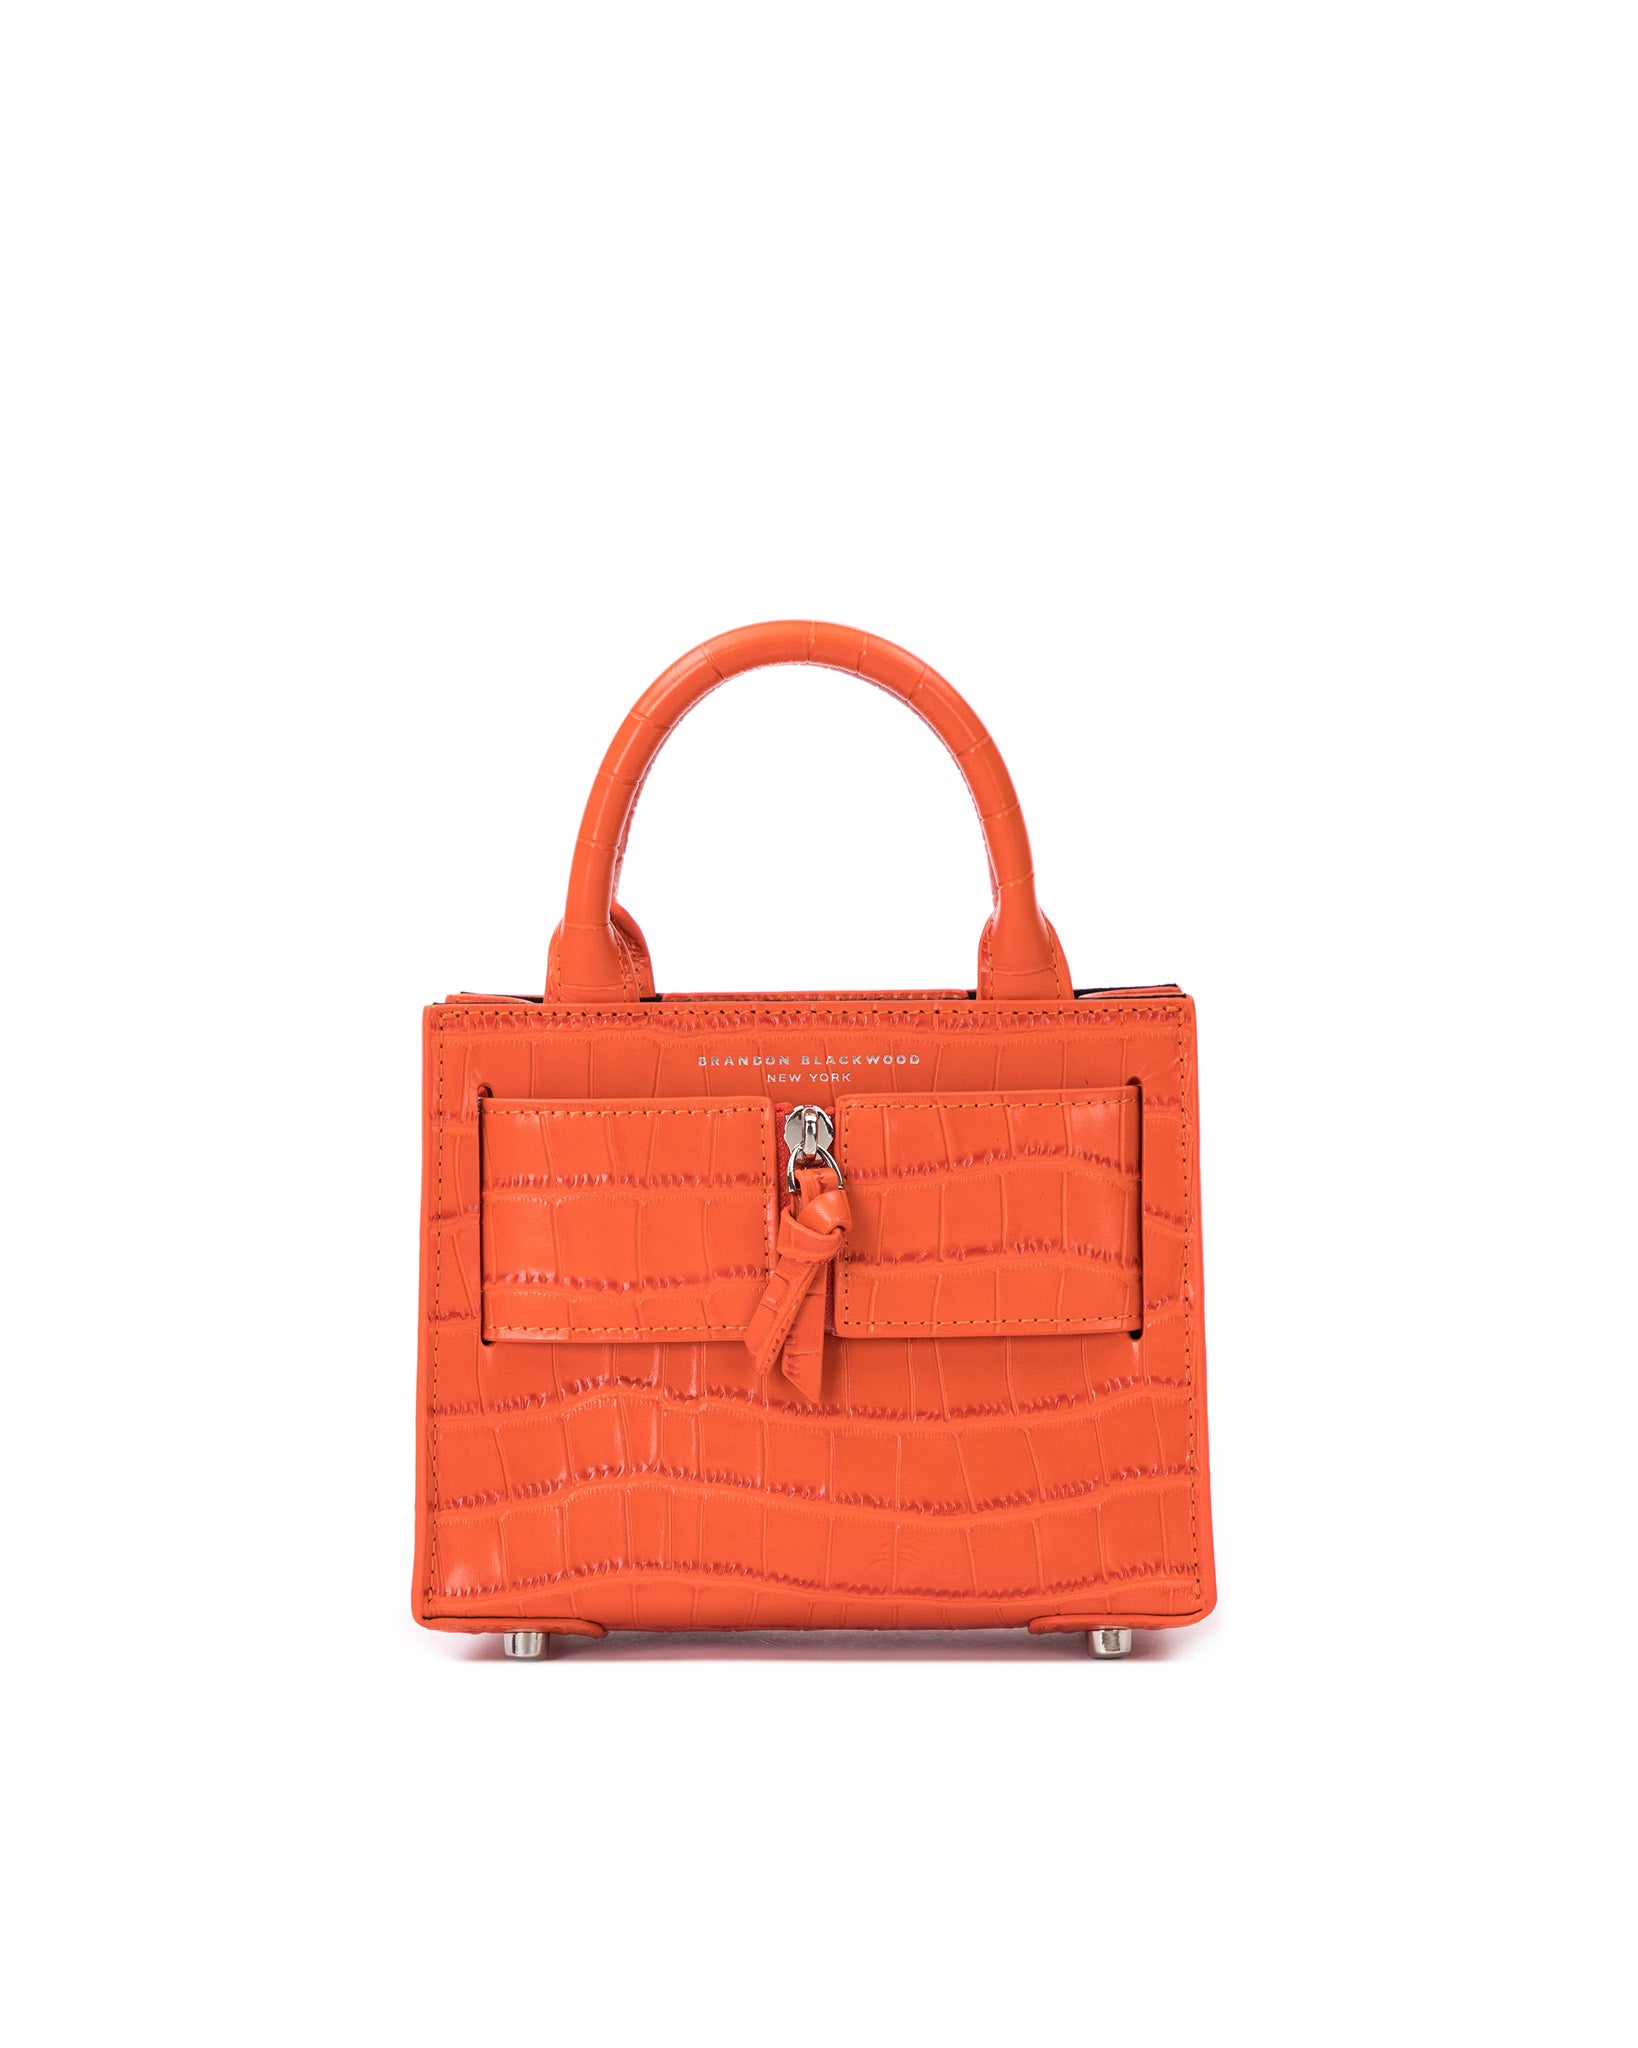 Brandon Blackwood New York - Kuei Bag - Orange Croc Embossed Leather